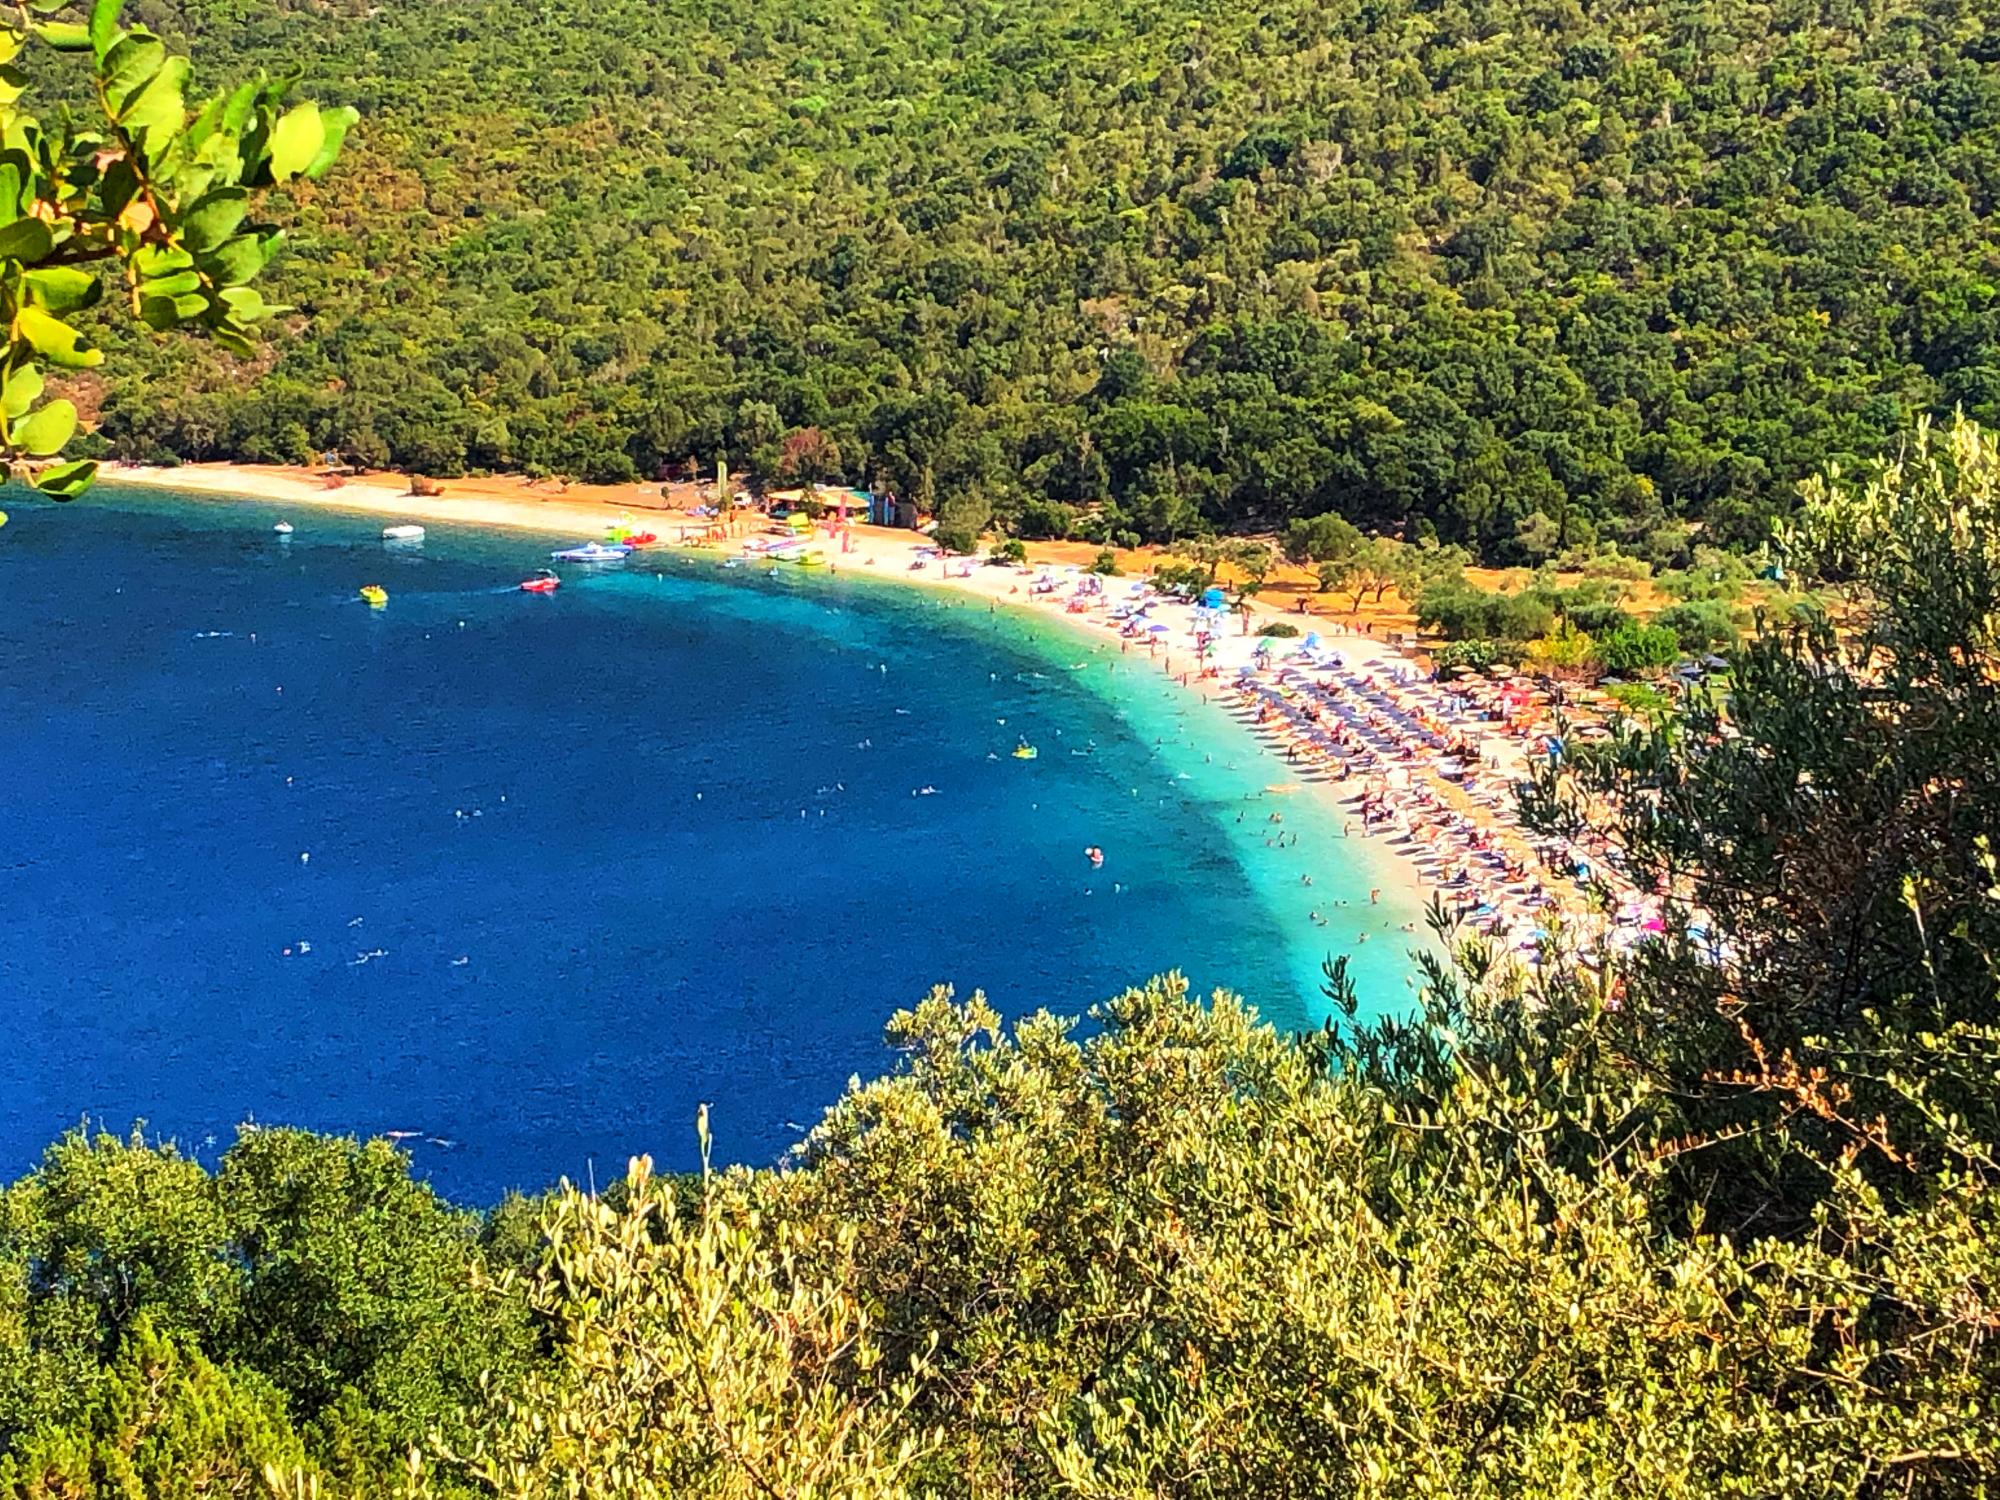 Гигантские черепахи, подземное озеро и пейзажи: чем поражает путешественников греческий остров Кефалония